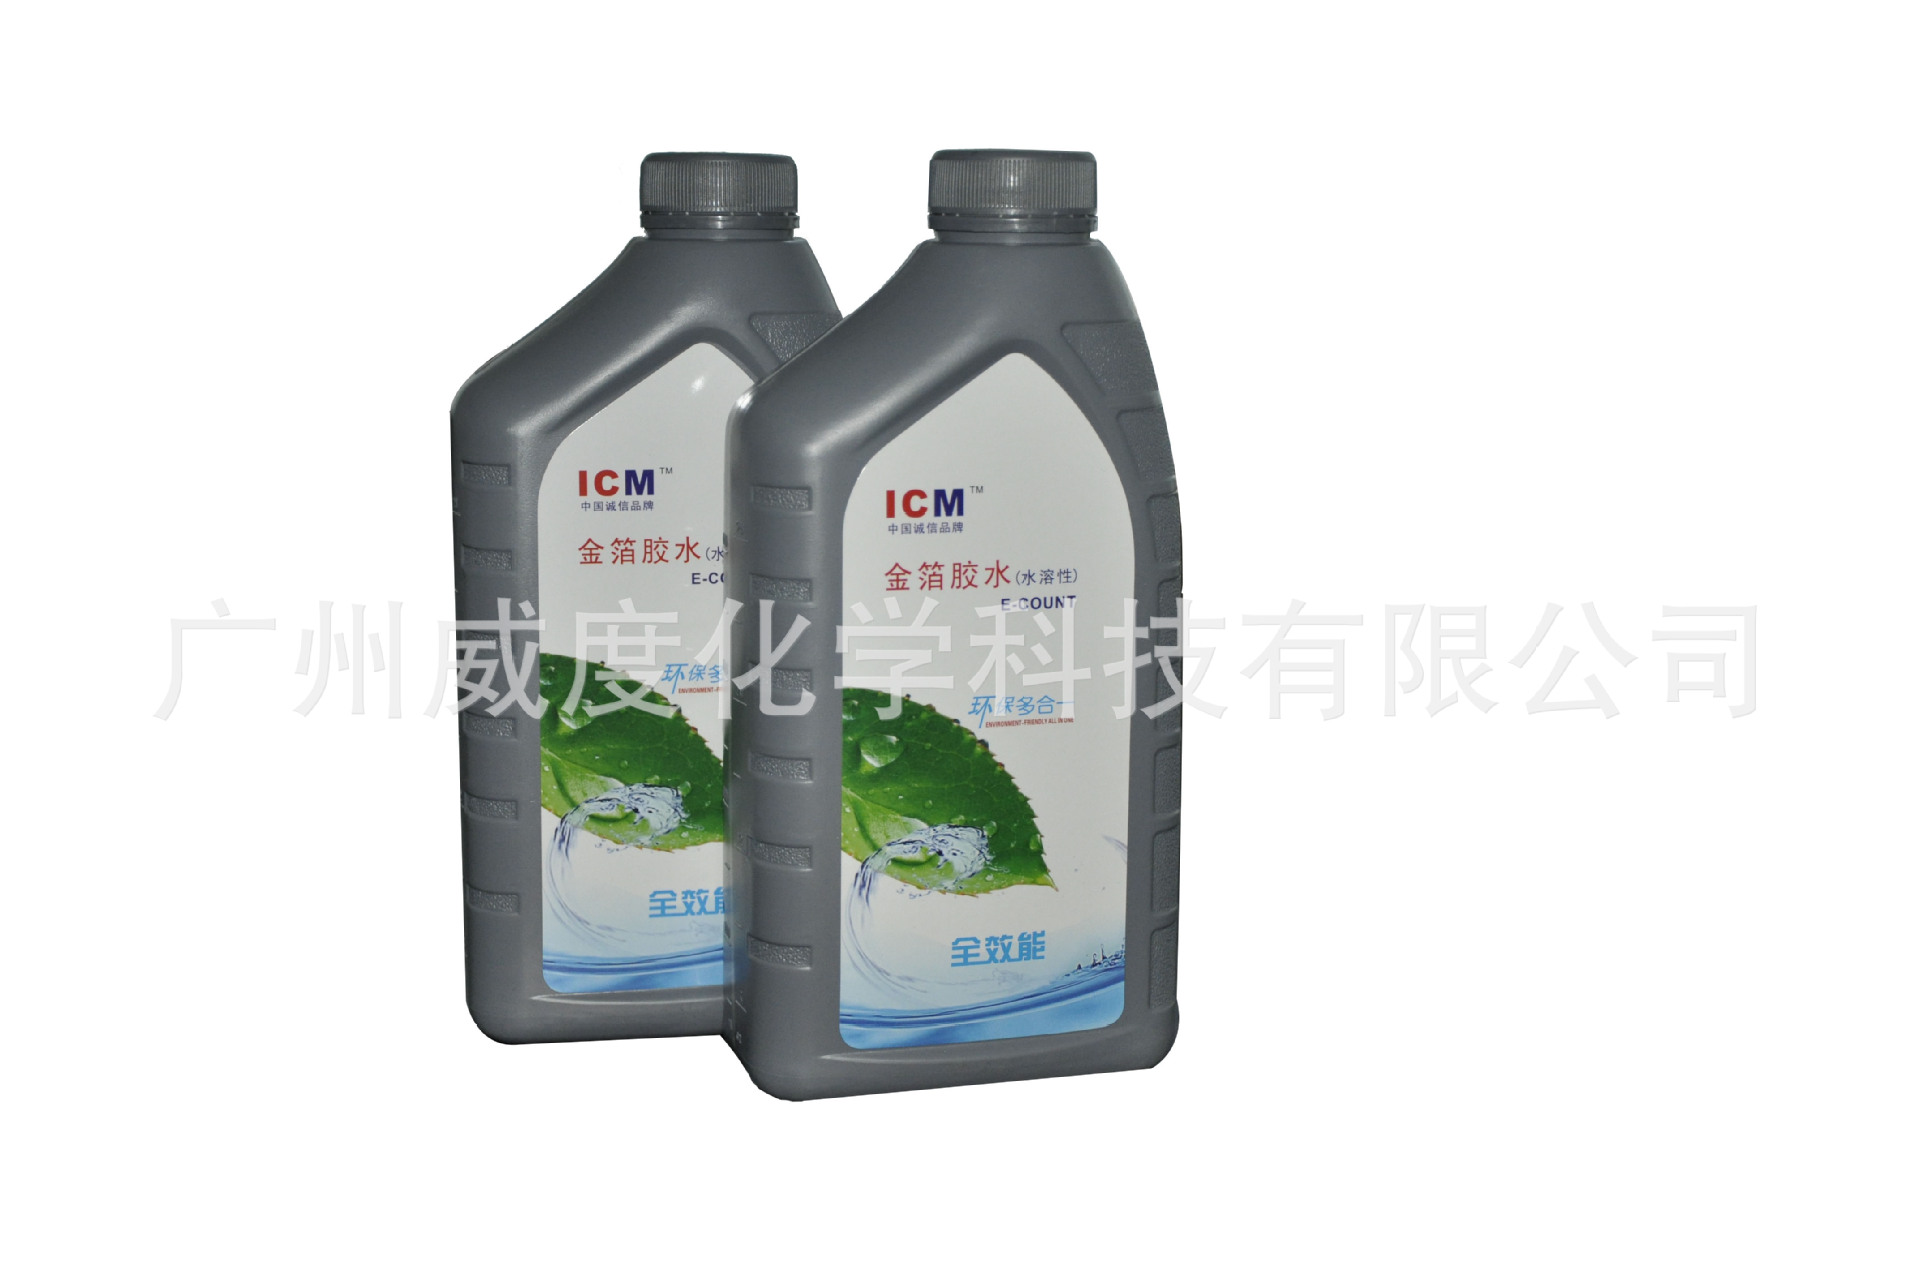 胶粘剂-贴金箔水性环保胶水 ICM | E-COUNT贴